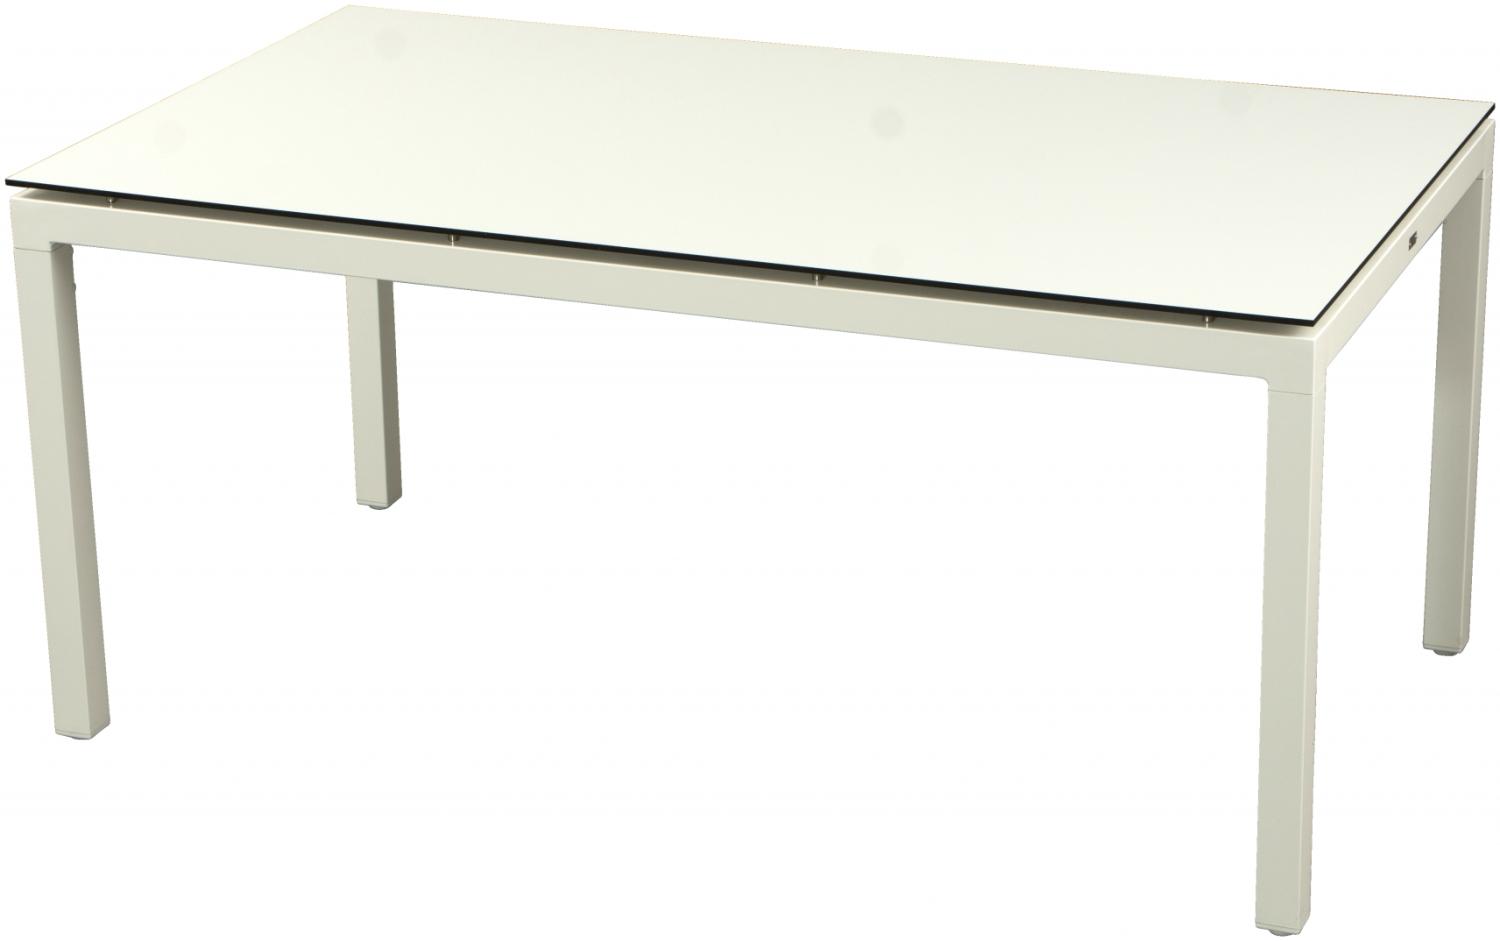 Inko Gartentisch Aluminium weiß 160x90 cm Terrassentisch Tischplatte nach Wahl Deropal schwarz Bild 1